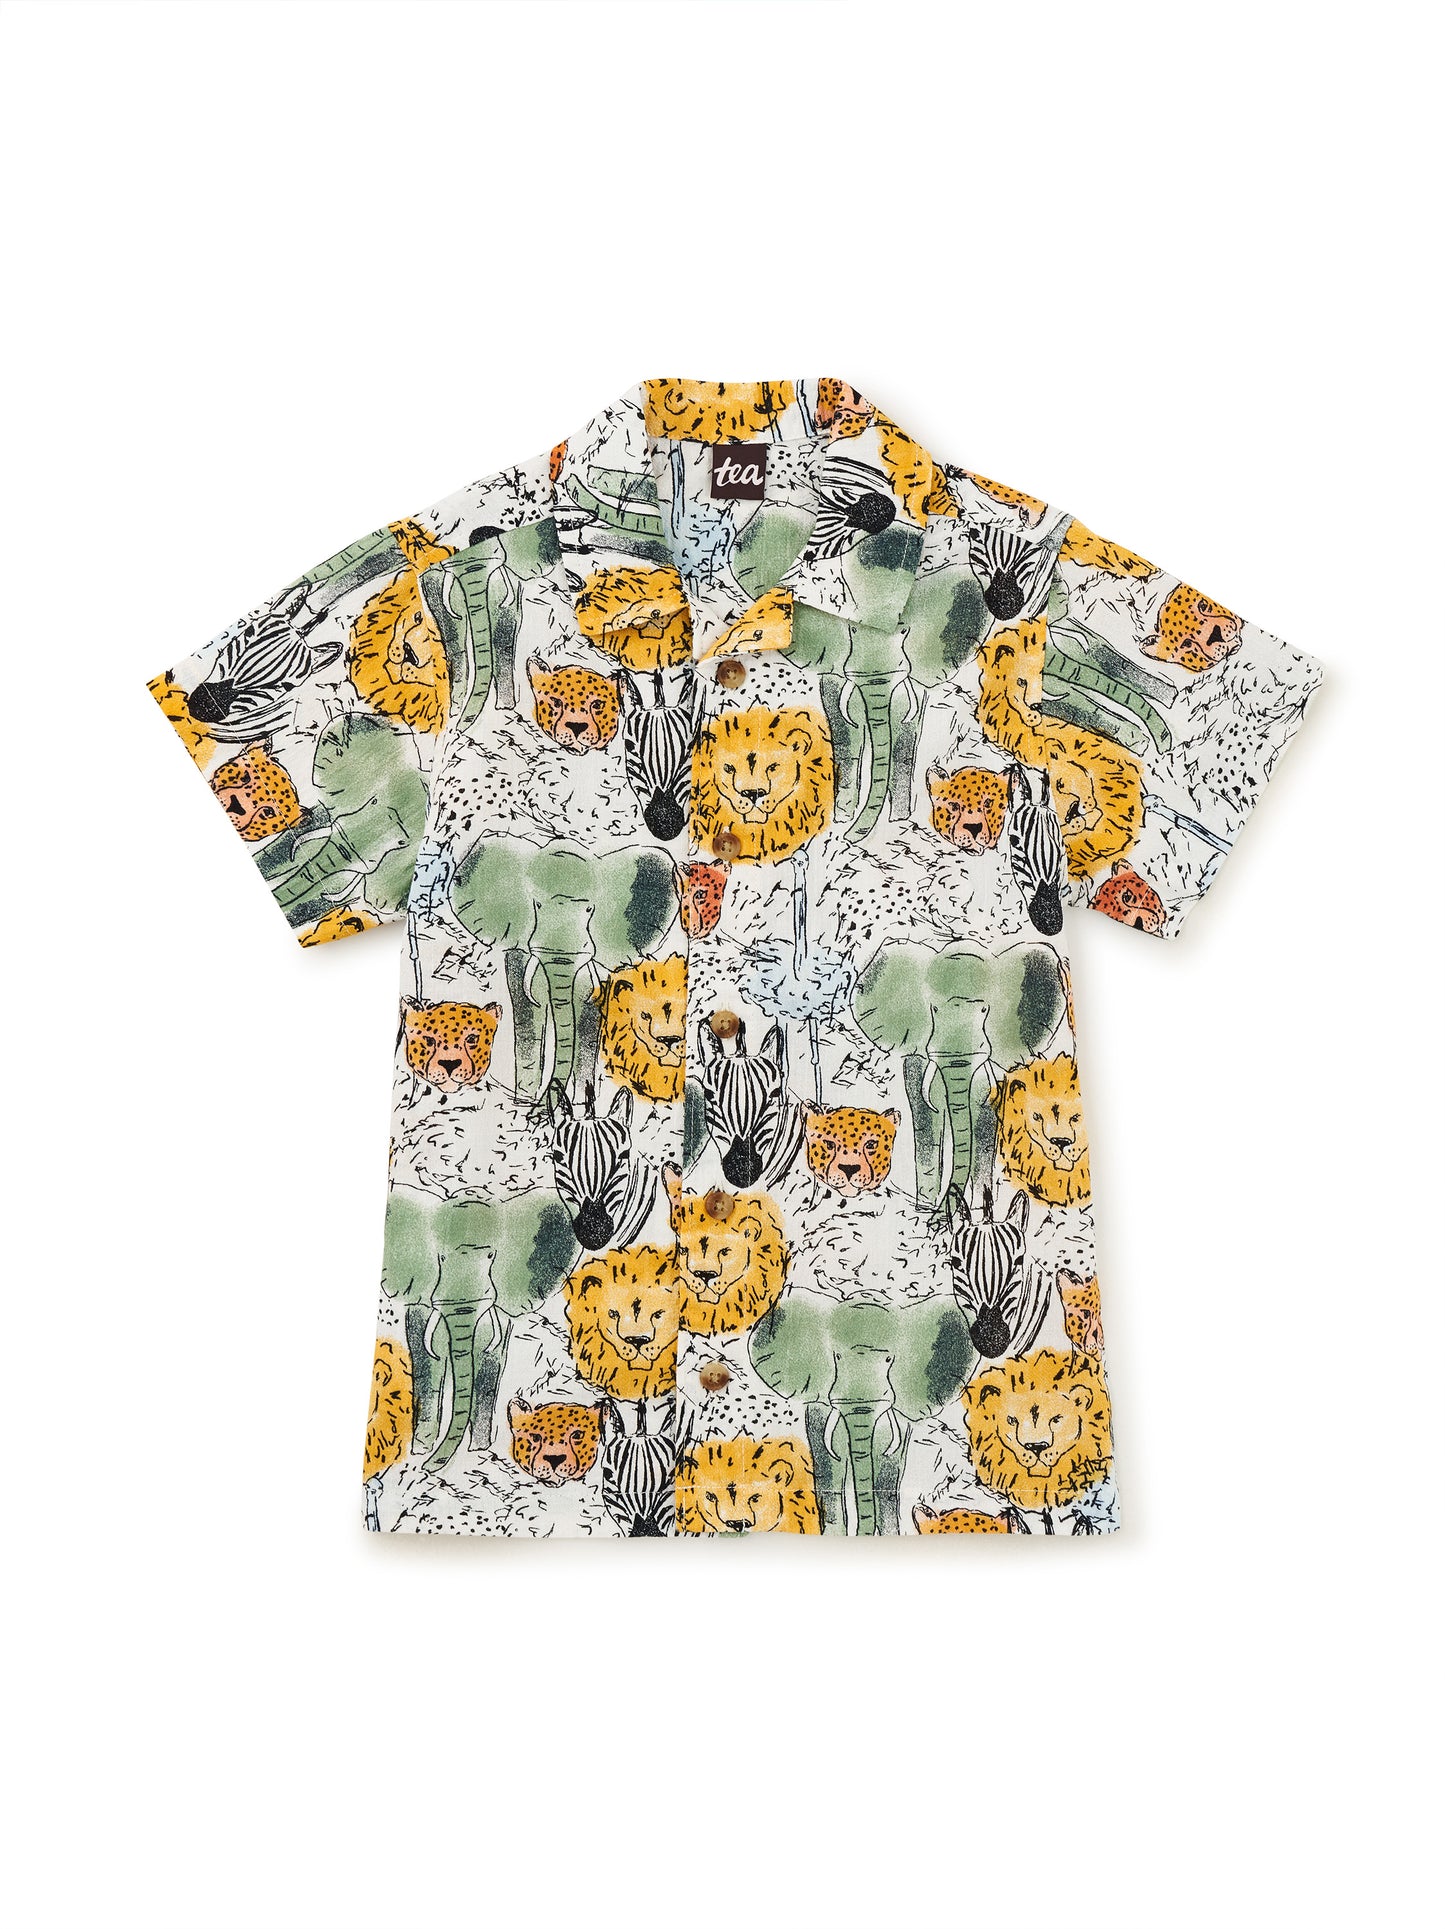 Printed Baby Camp Shirt - Safari Toile